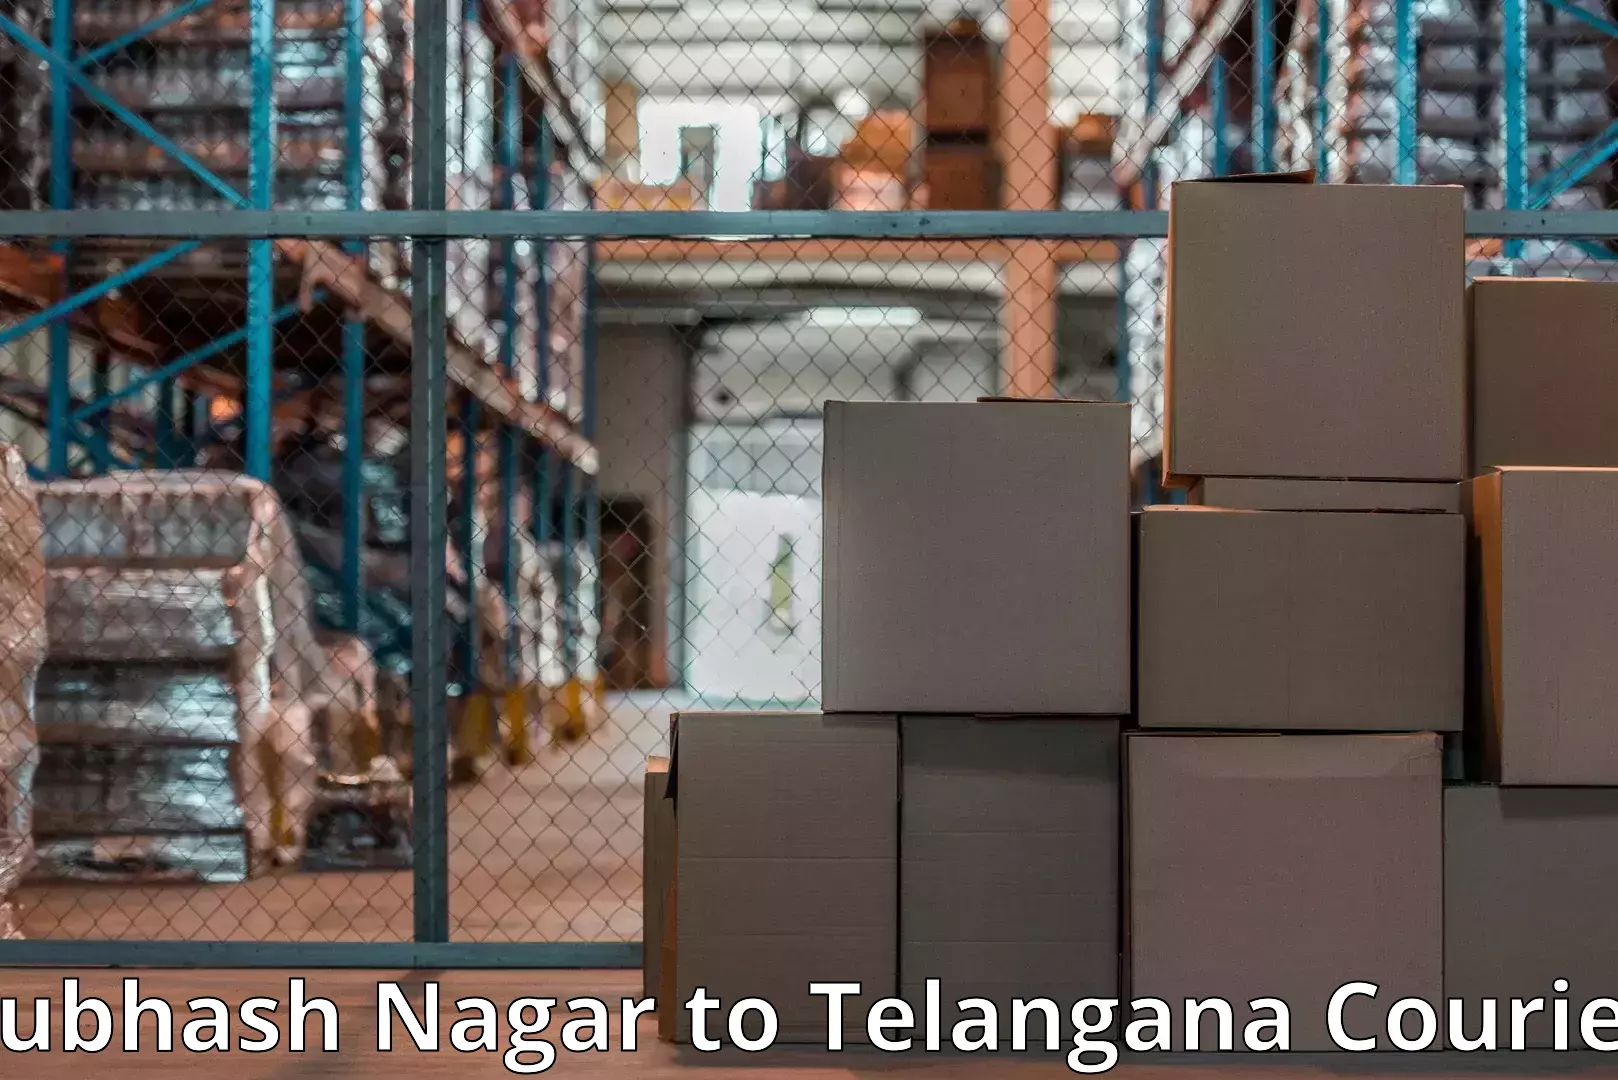 Quality moving company Subhash Nagar to Bhadrachalam